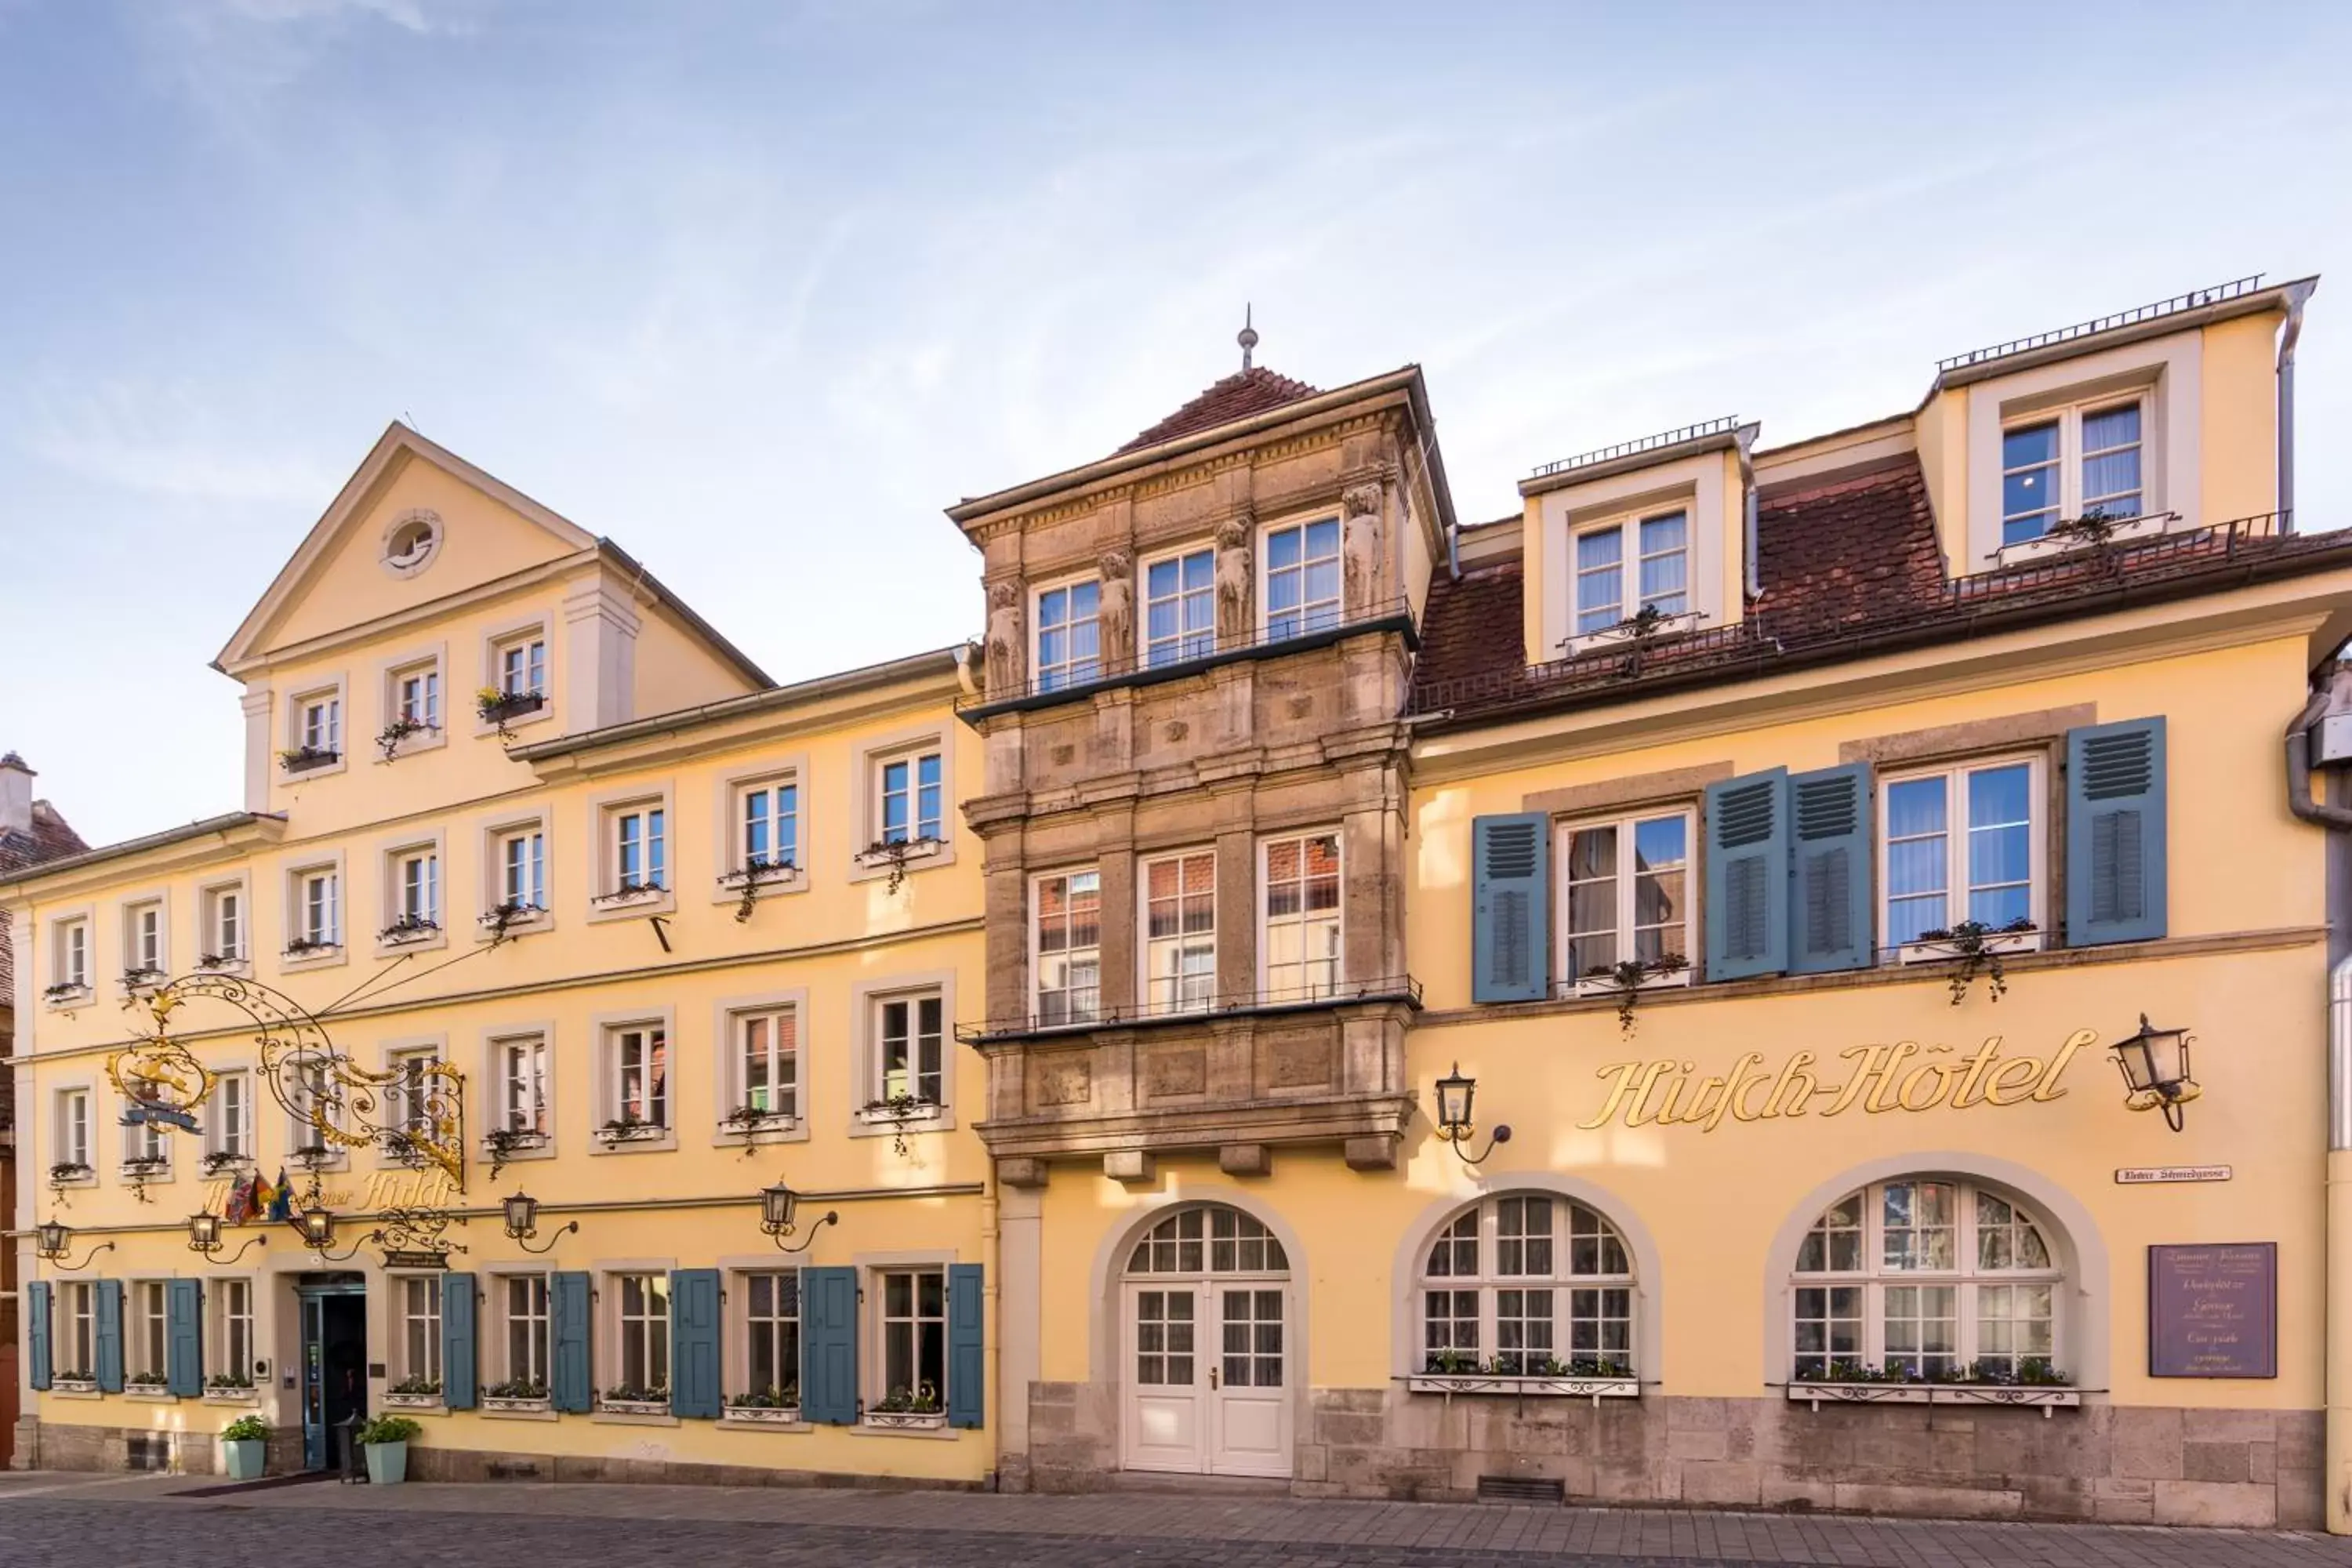 Property Building in Historik Hotel Goldener Hirsch Rothenburg